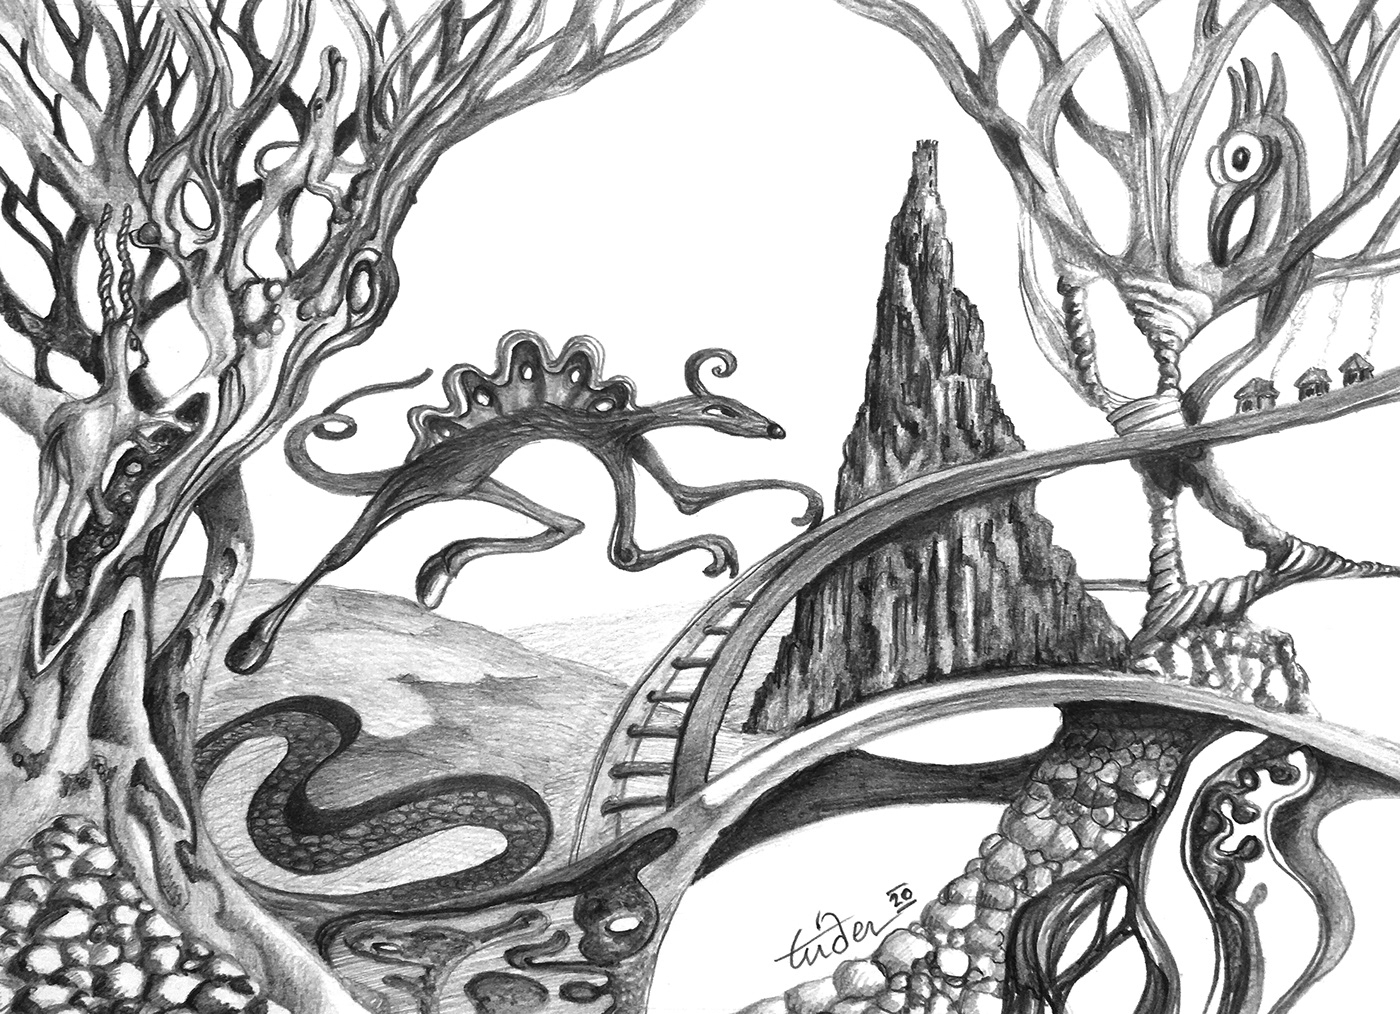 crayon dessin ILLUSTRATION  imaginaire noir et blanc Surrealisme surrealiste animaux imaginaires Dessin au crayon paysage imaginaires